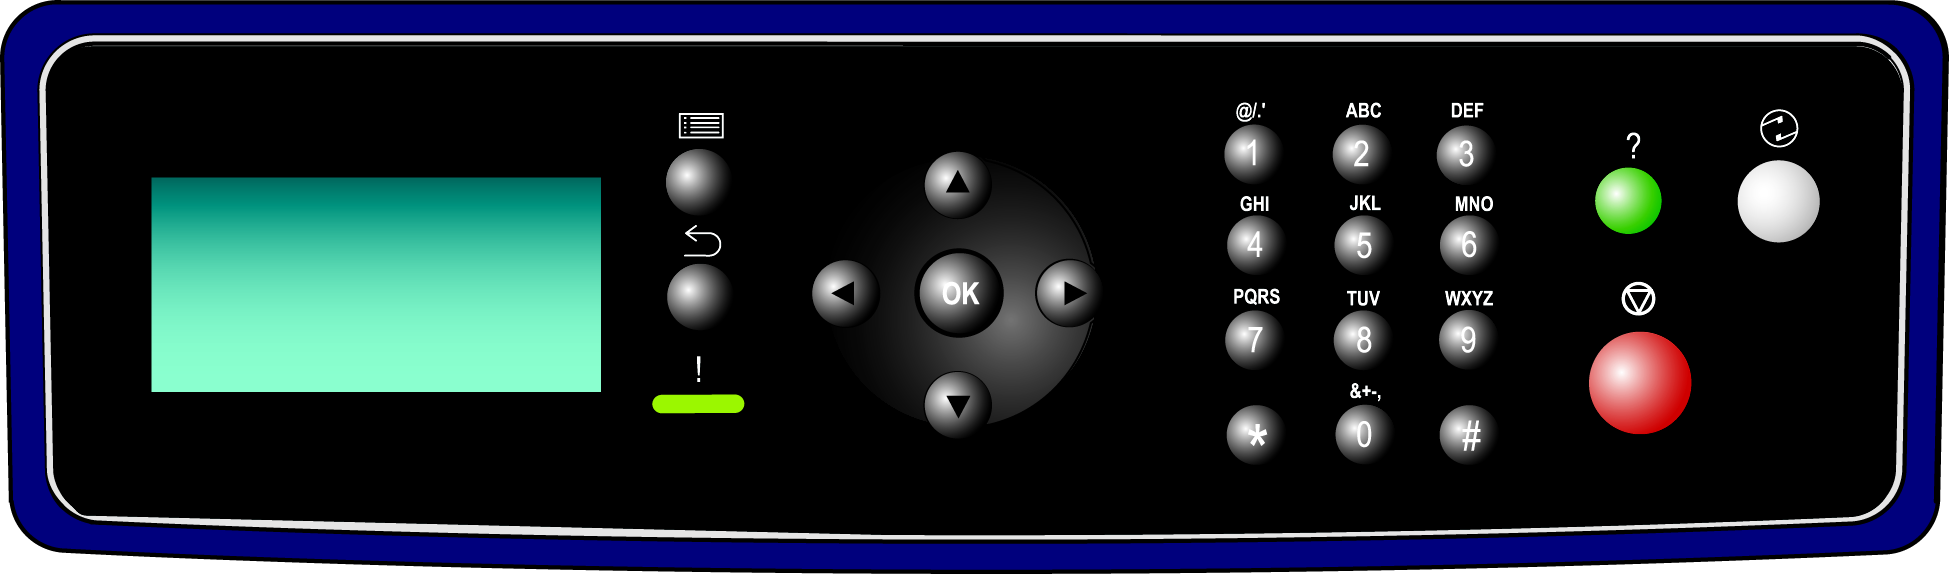 Introducción Descripción general del panel de control Pantalla LCD Botón Menú Botón OK Teclado alfanumérico